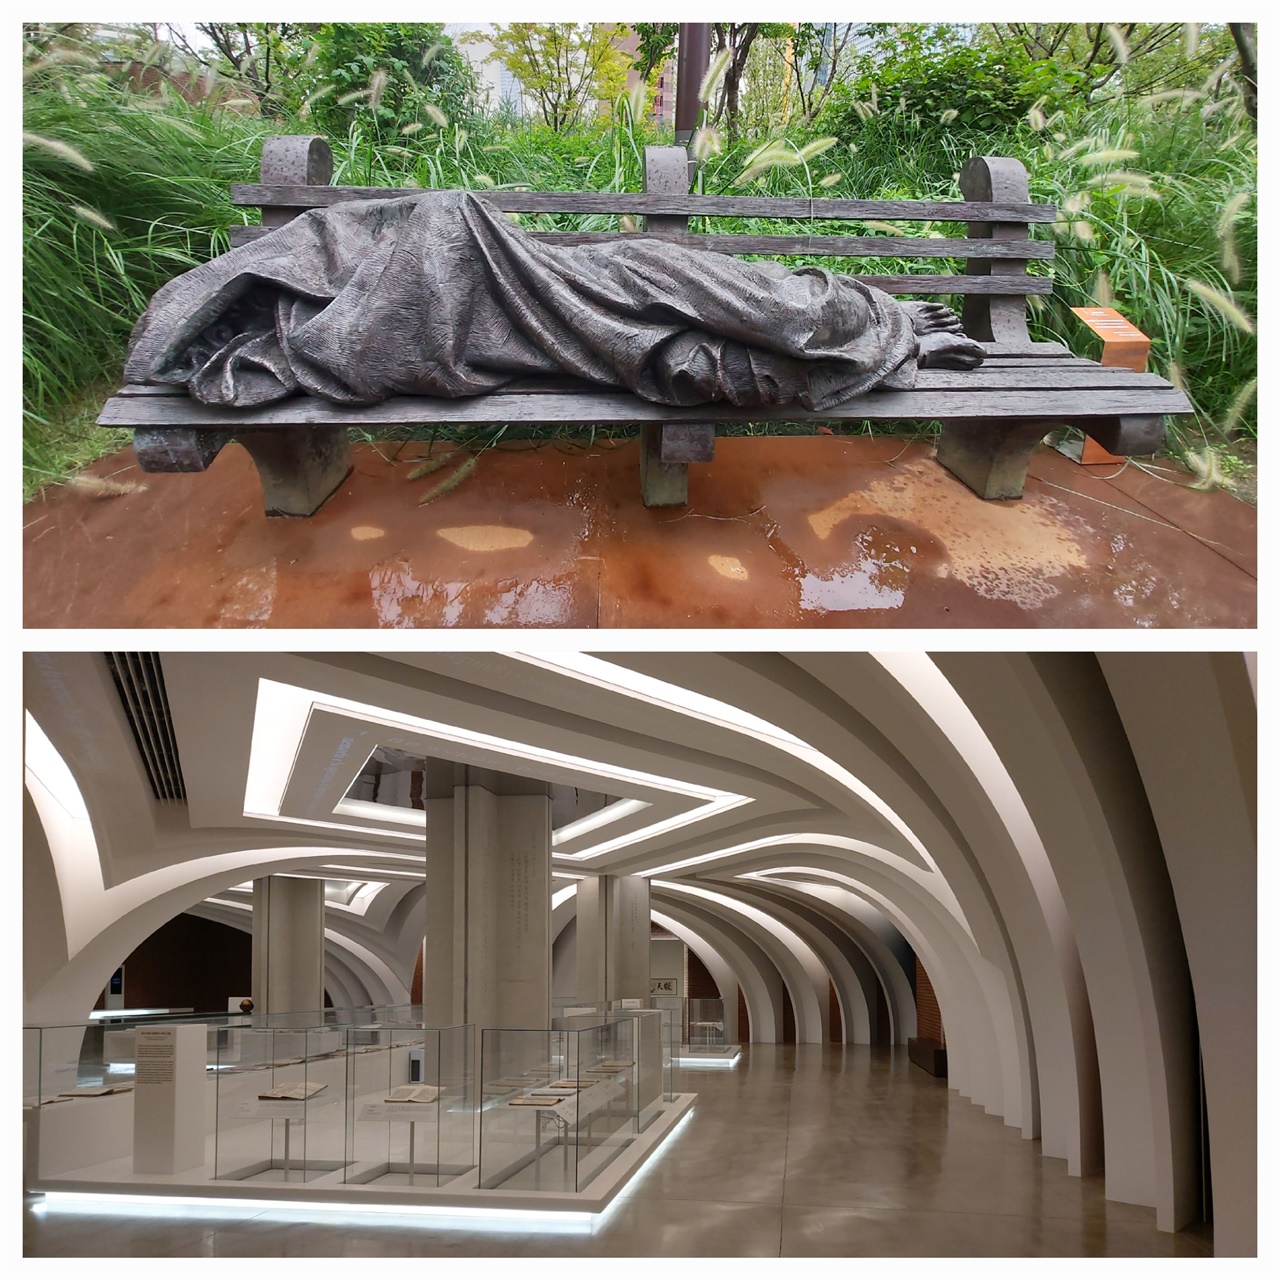  위쪽 사진이 티모시 슈말츠 작품 <노숙자 예수>이고 아래쪽 사진은 상설 전시실 내부 모습니다. 상설전시실은 아치 형태에 흰 조명을 더해 클래식하면서도 현대적이다.